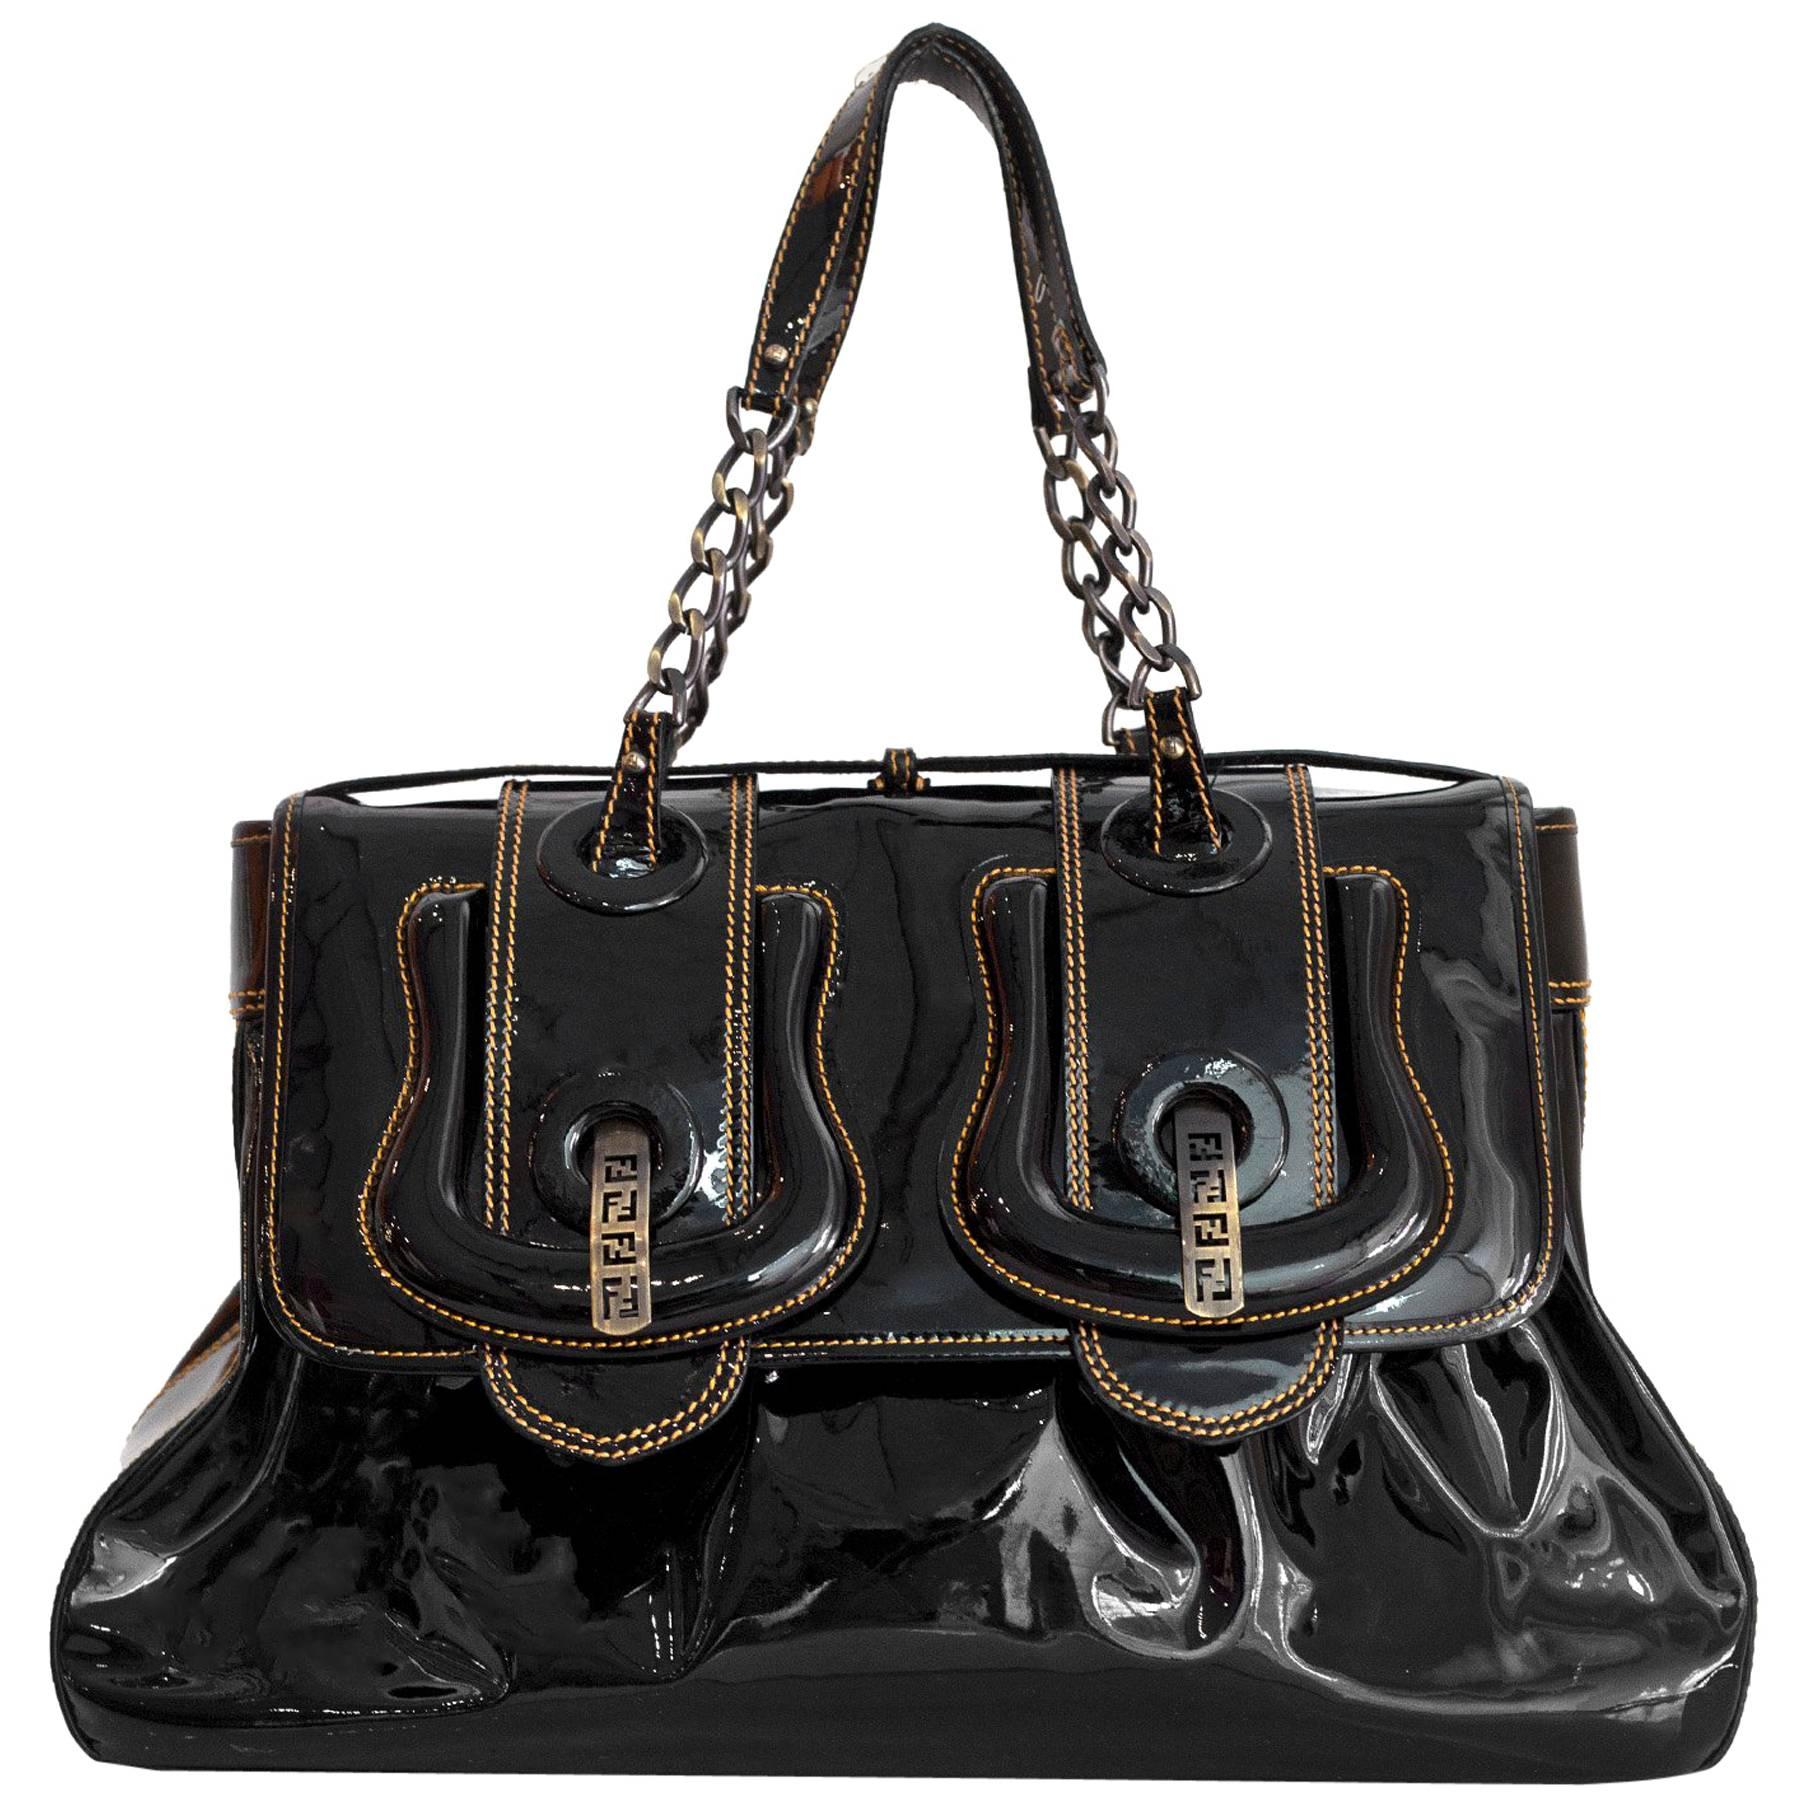 Fendi Black Patent Leather Large B Bag